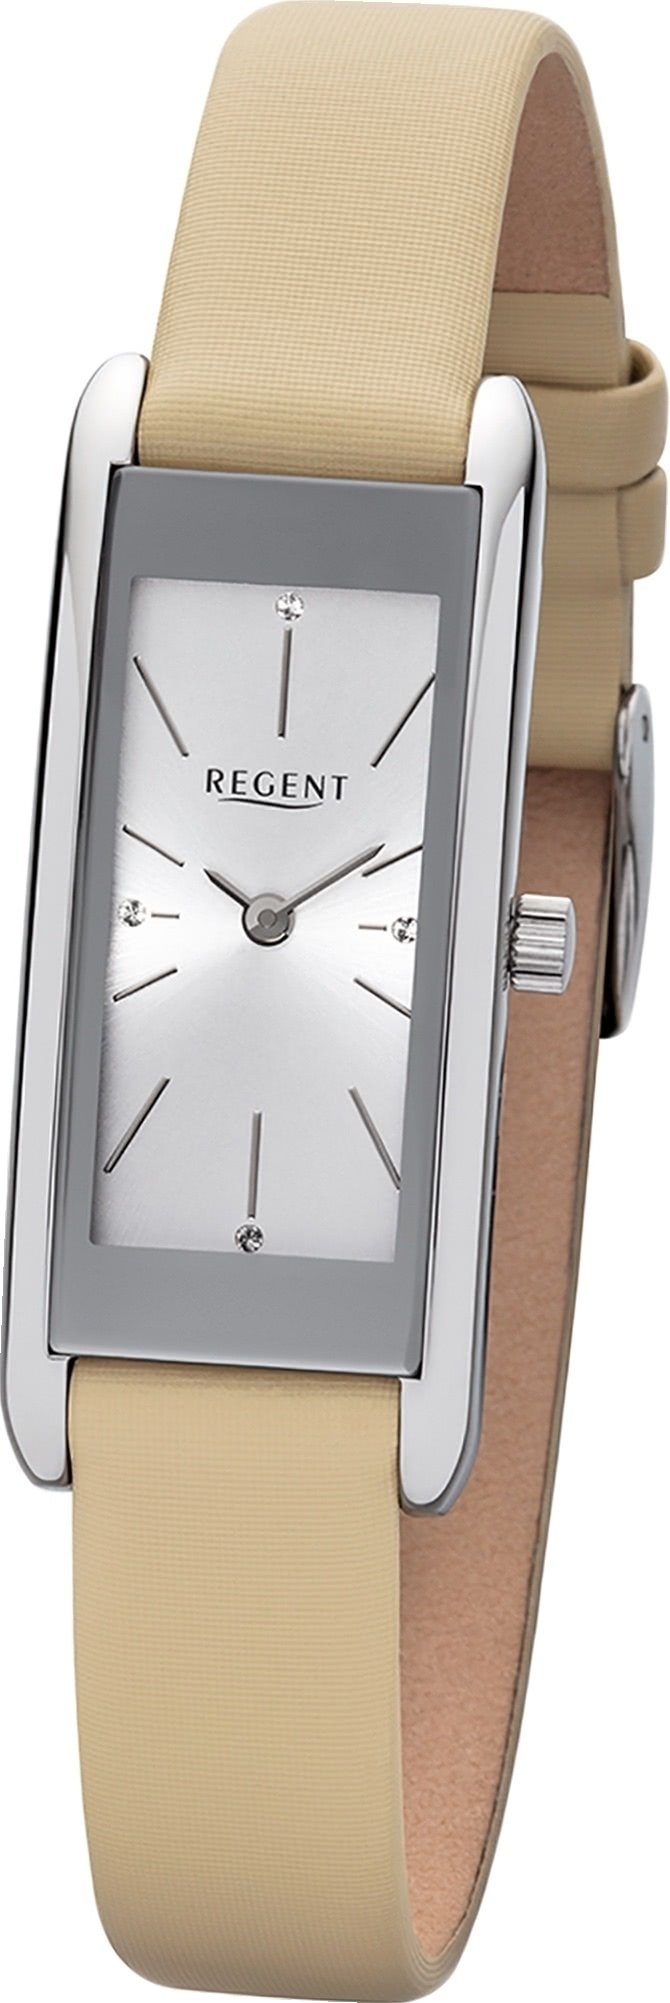 Regent Quarzuhr Regent Leder Damen Uhr BA-458 Analog, (Analoguhr), Damenuhr  mit Lederarmband, eckiges Gehäuse, groß (ca. 41mm), Elegant-Style